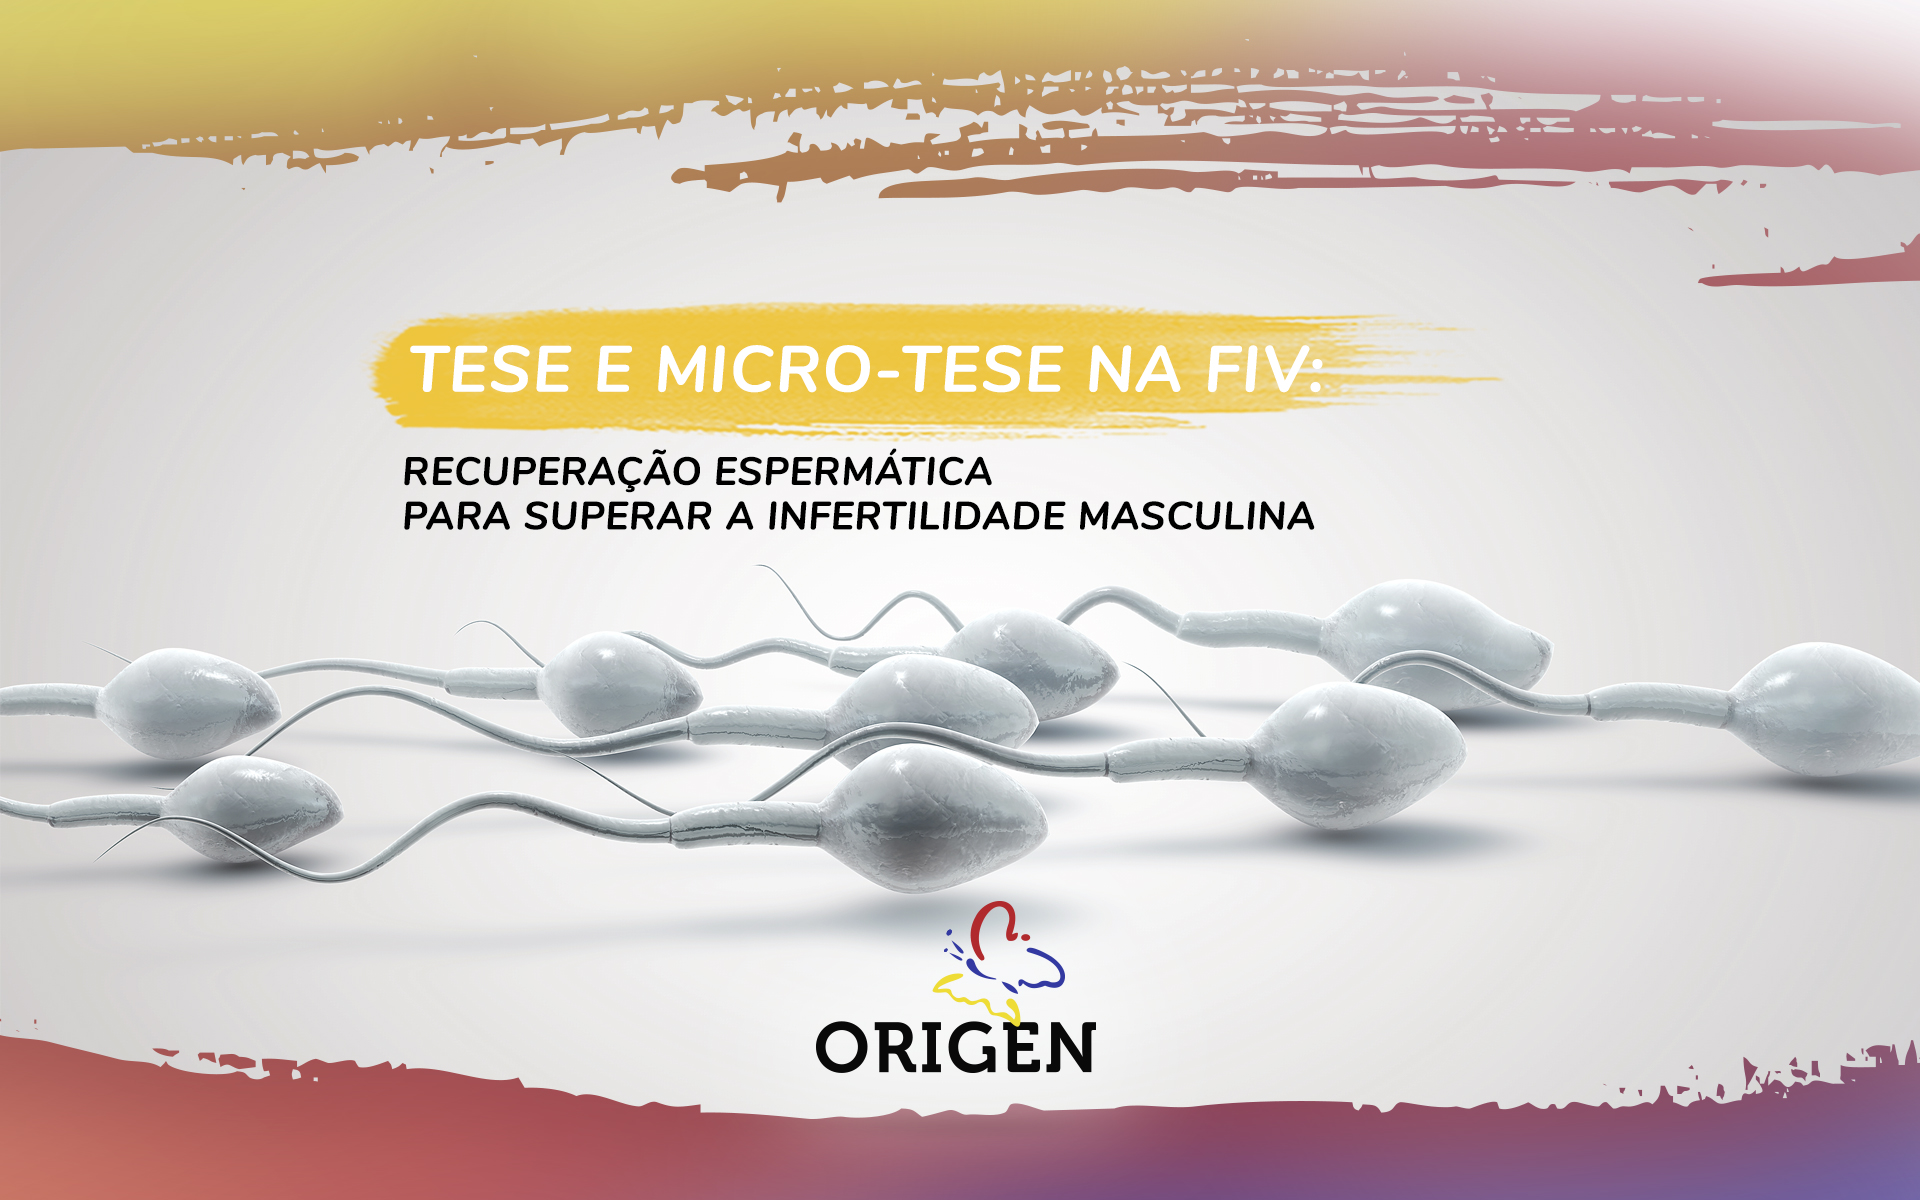 TESE e Micro-TESE na FIV: recuperação espermática para superar a infertilidade masculina